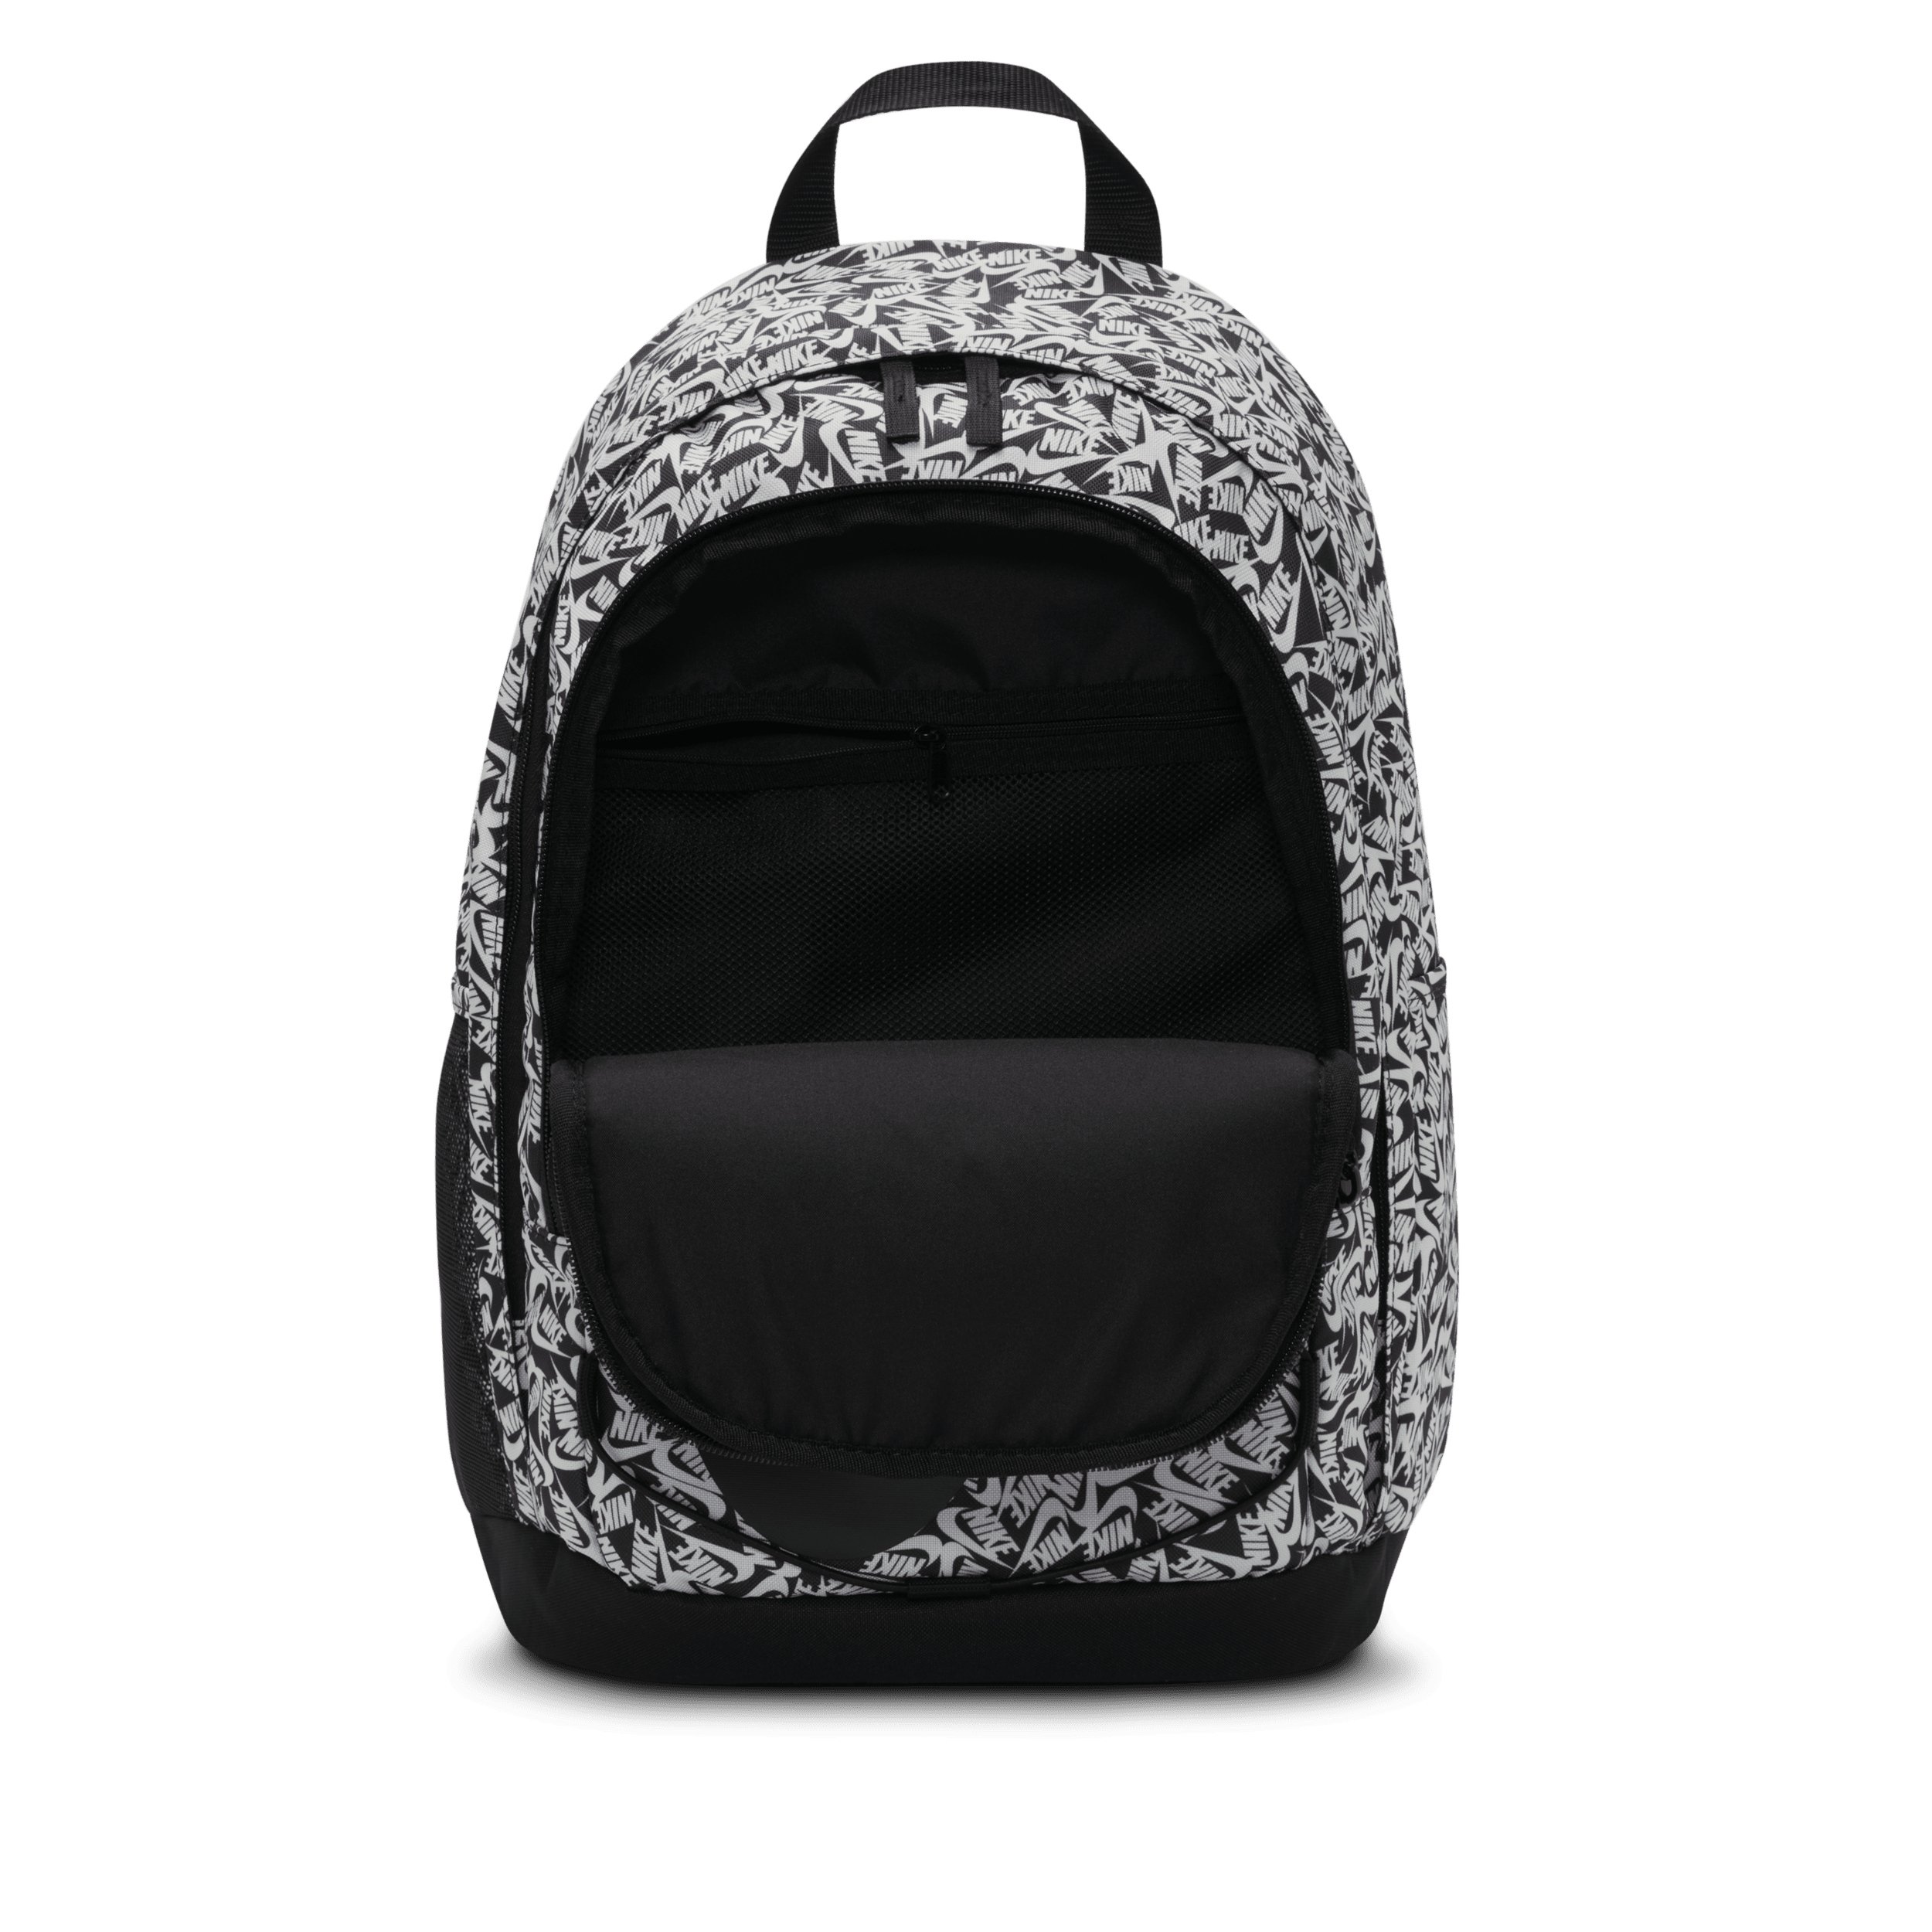 Nike Hayward 2.0 Student Large Capacity schoolbag backpack Gradient Bl -  KICKS CREW